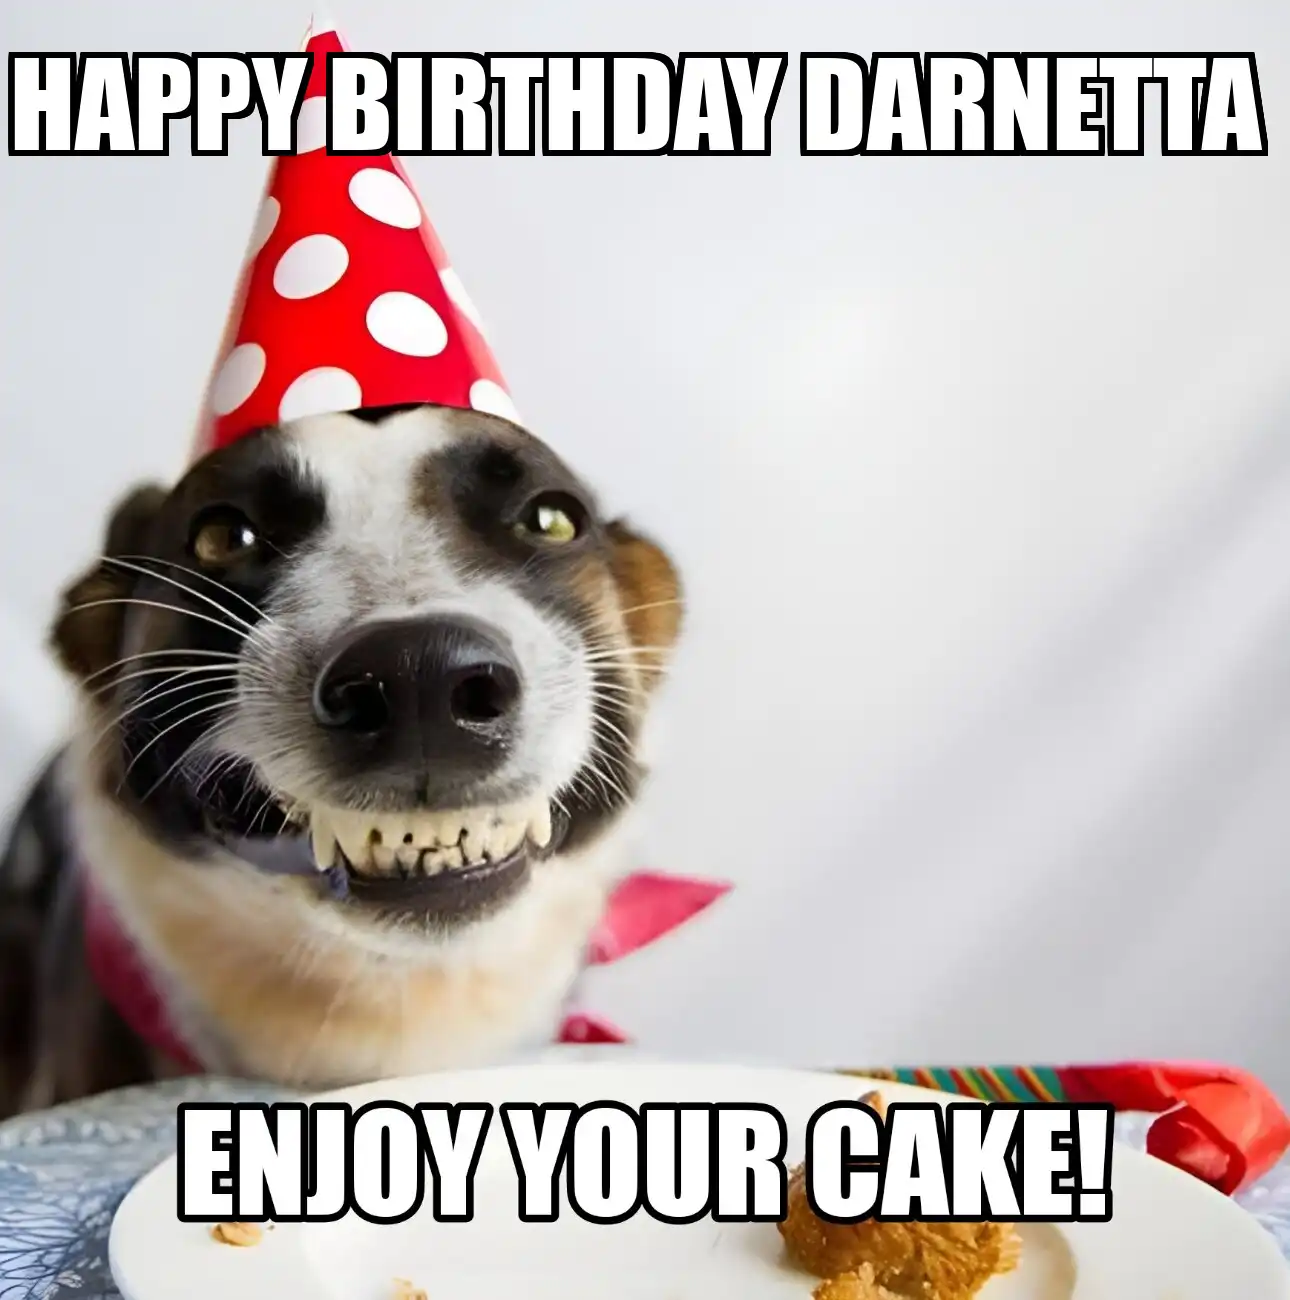 Happy Birthday Darnetta Enjoy Your Cake Dog Meme